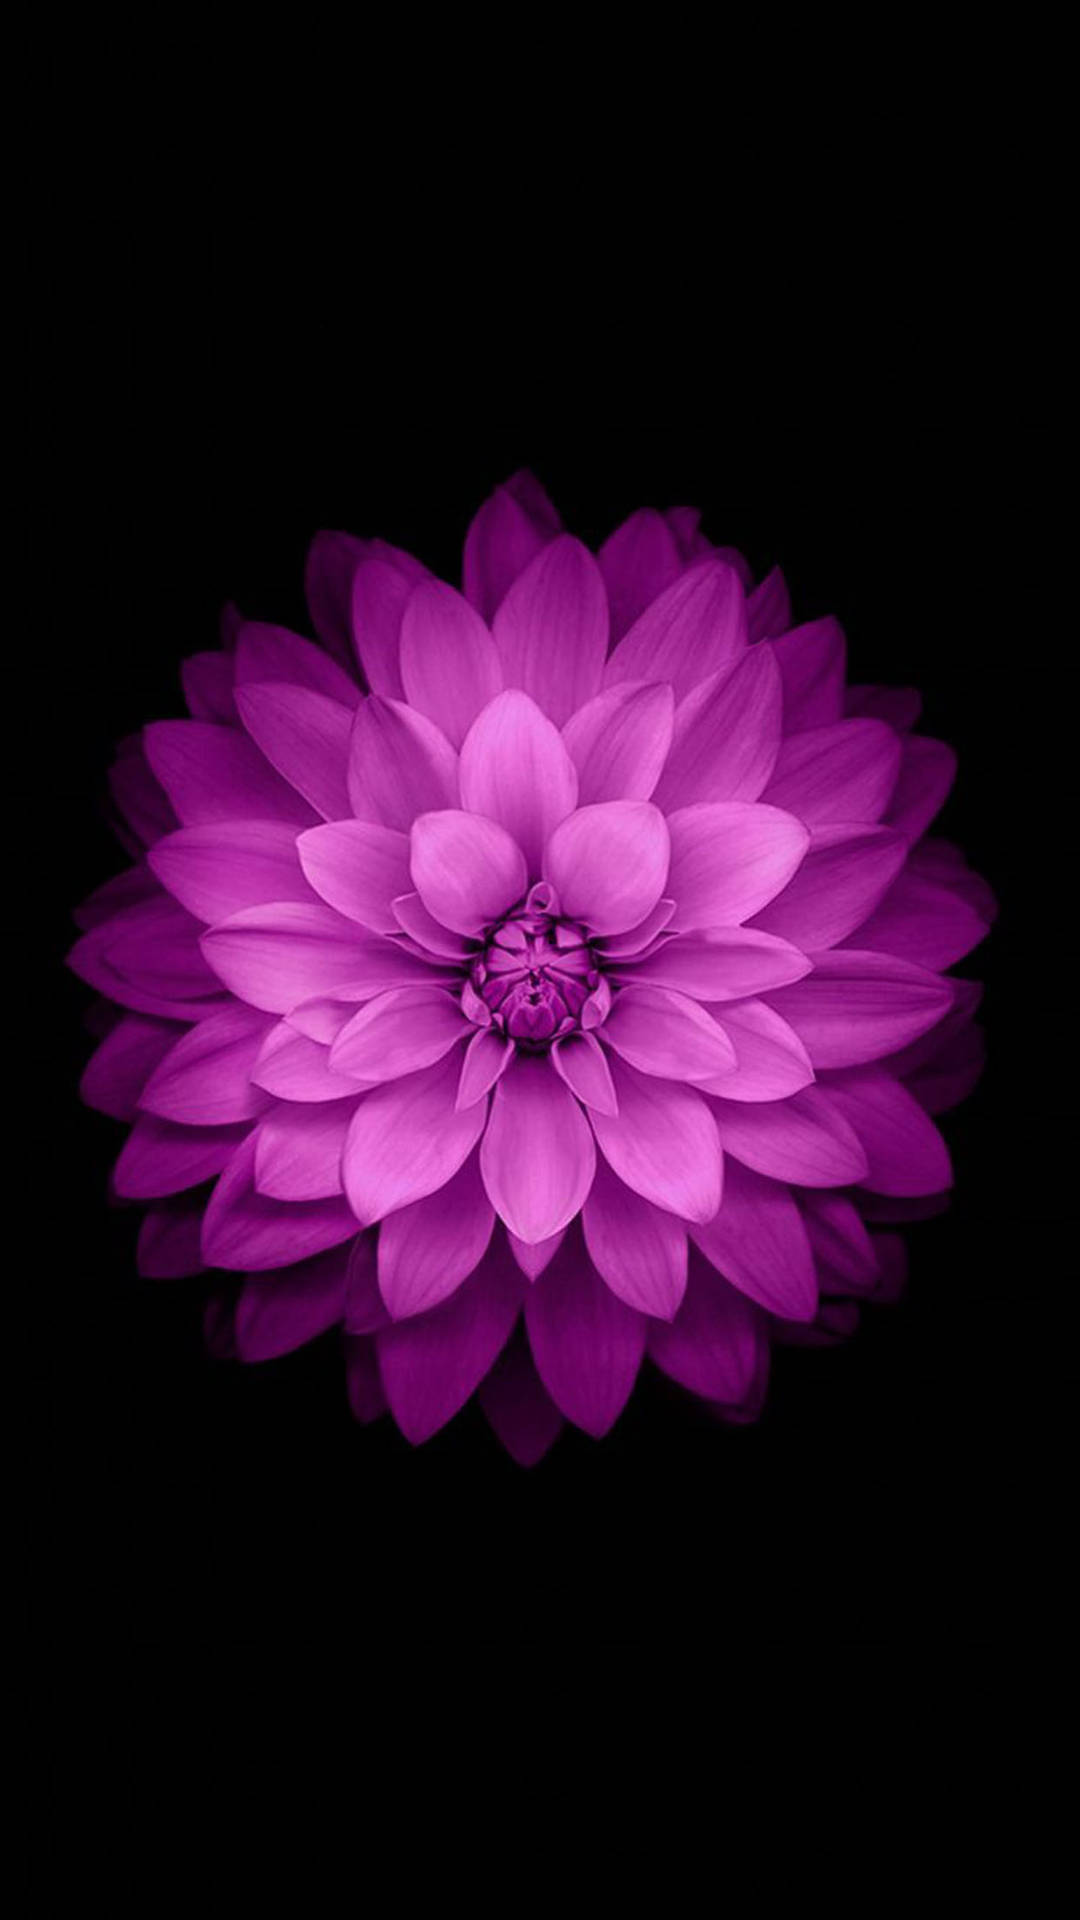 Purple Star Dahlia Flower Apple Wallpaper